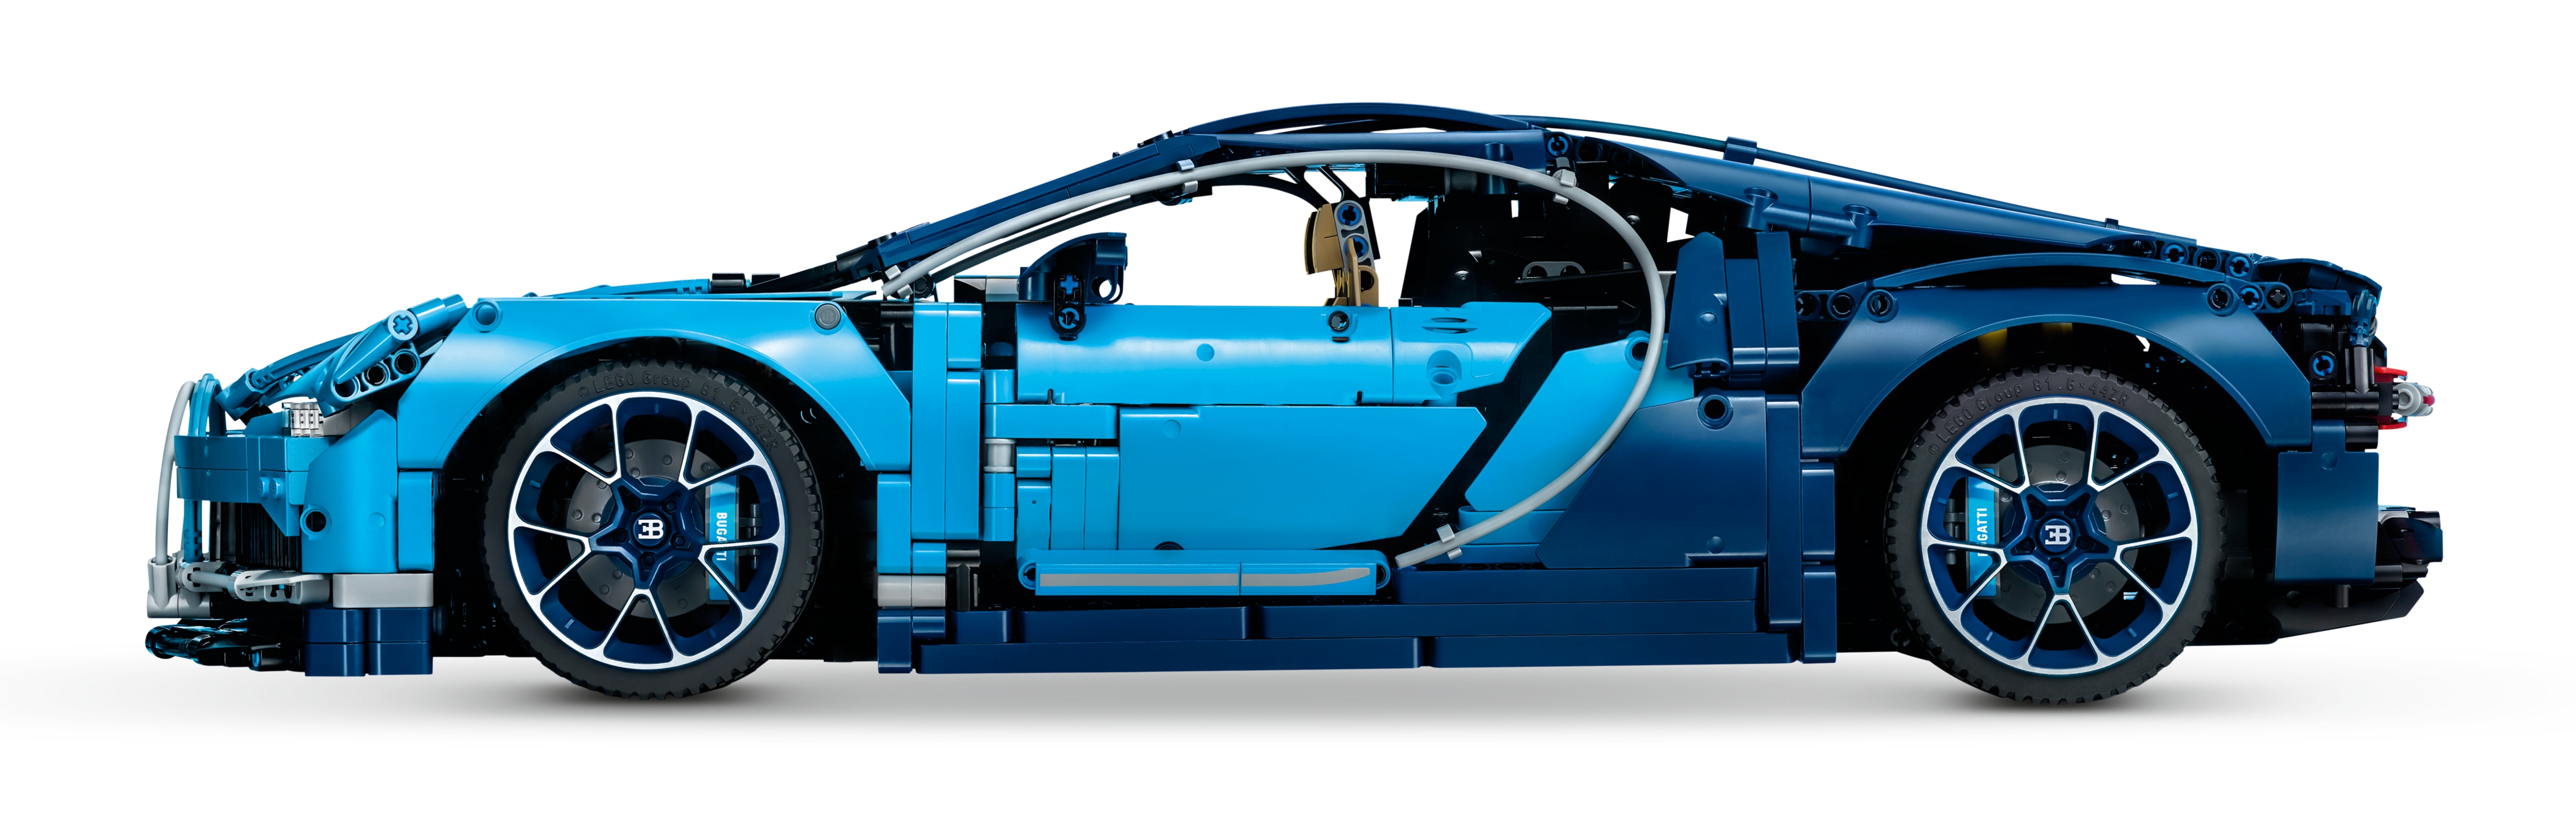 42083 Brand New FREE 24HR DELIVERY LEGO Technic Bugatti Chiron